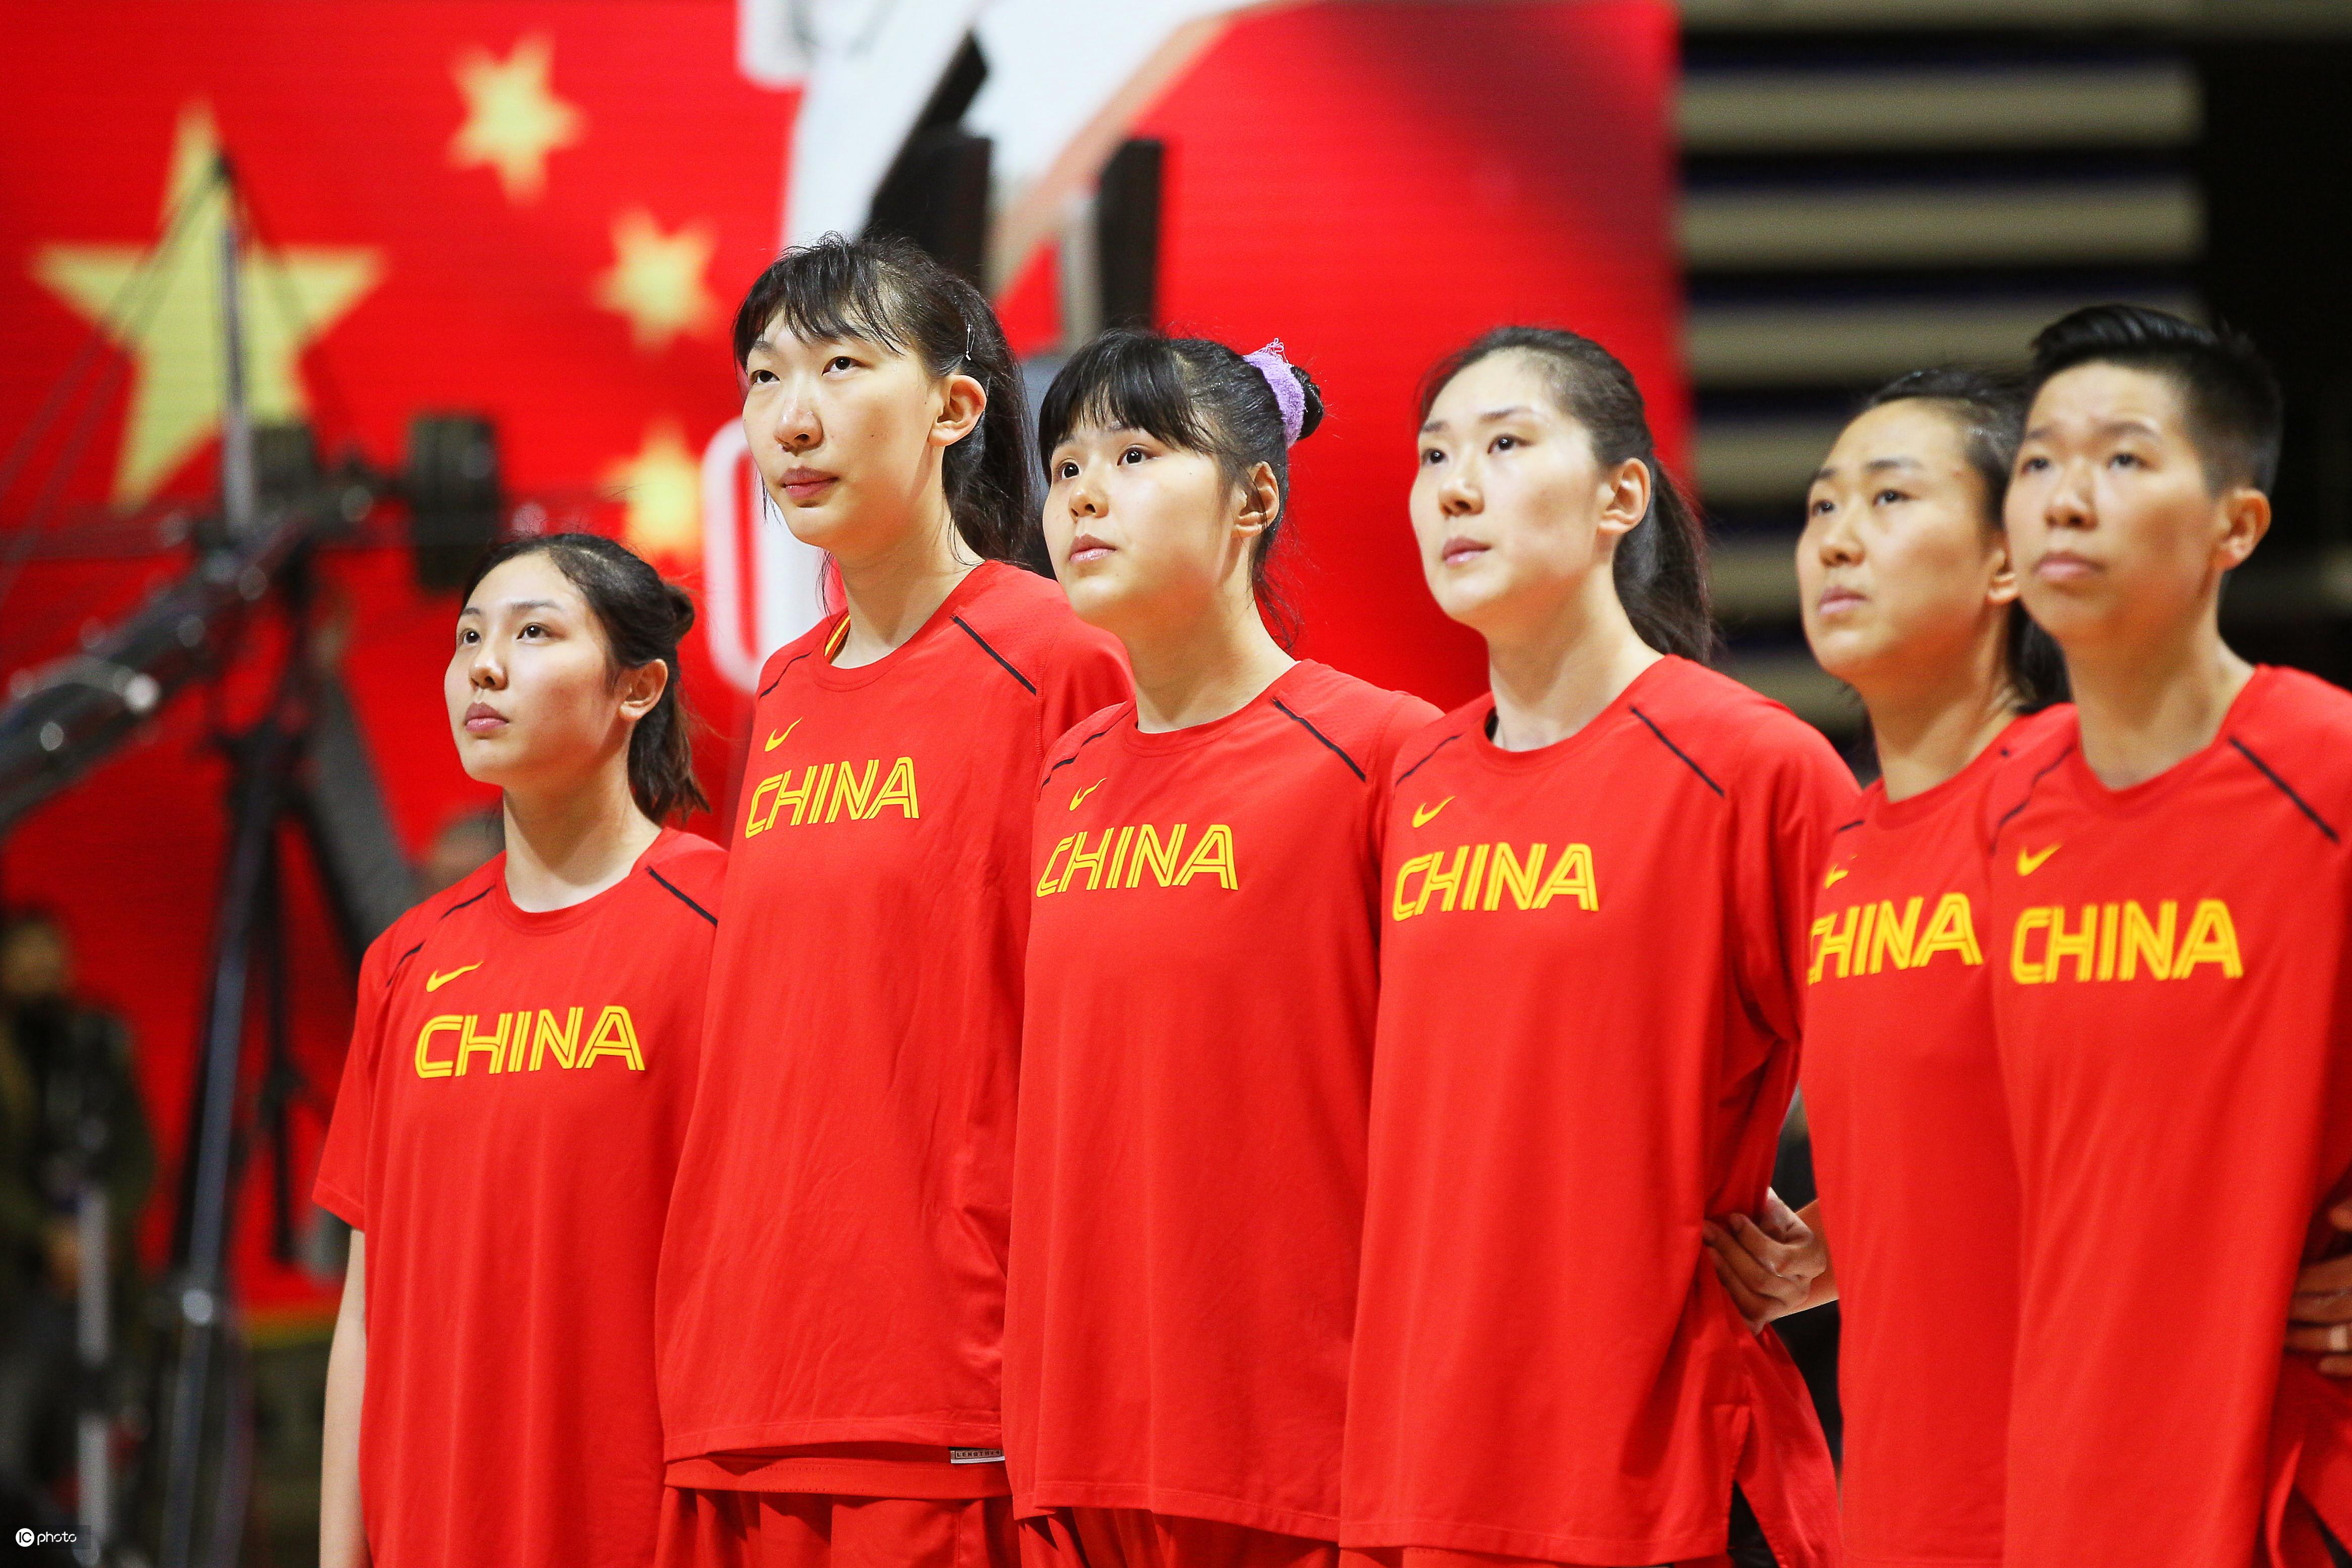 1992年奥运会女篮决赛 92年奥运会,中国女篮获得亚军,创造历史,12名